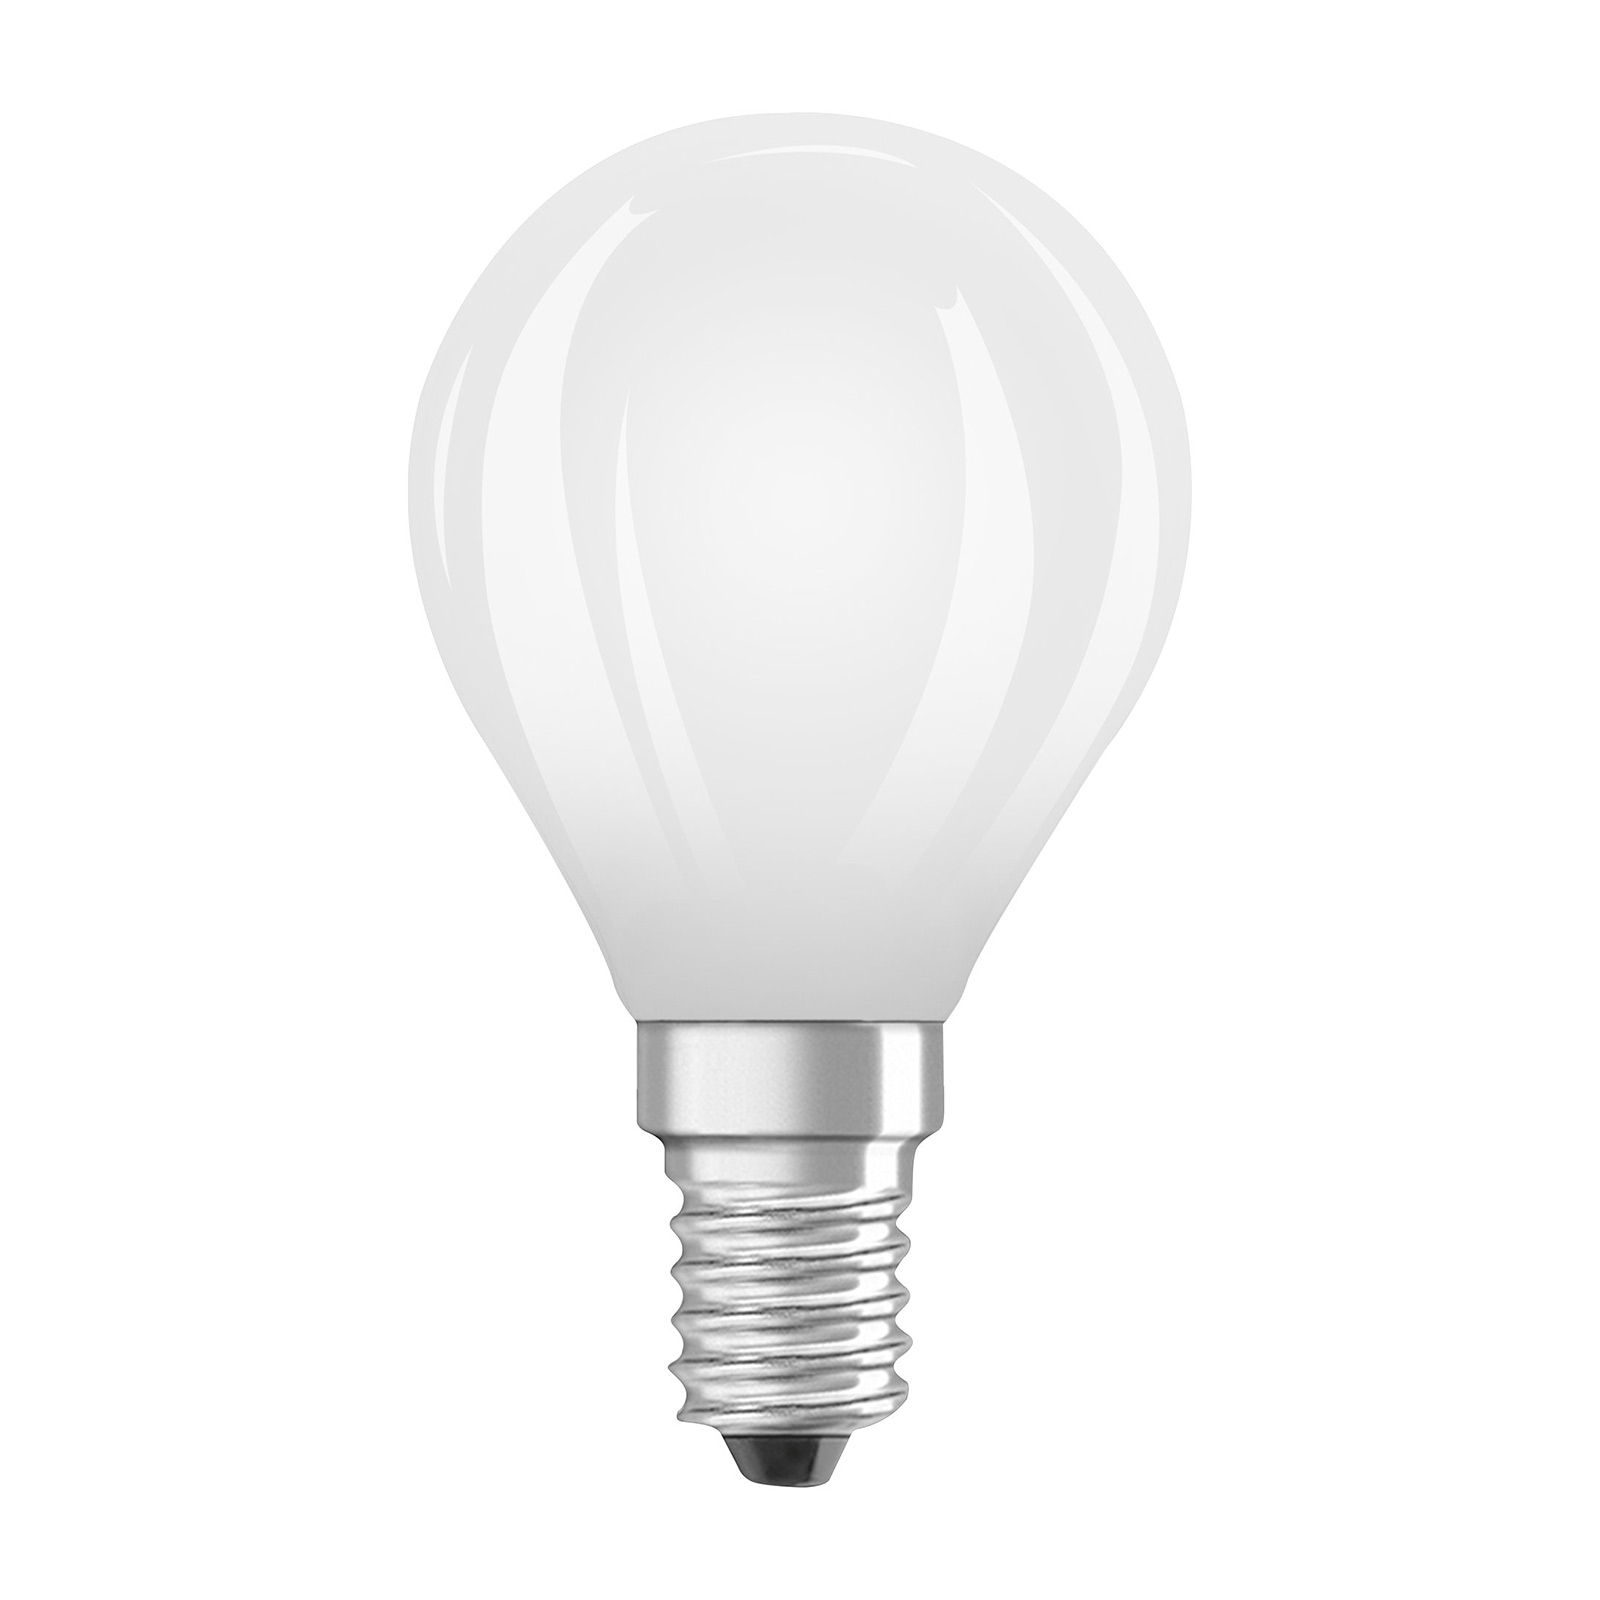 OSRAM LED druppellamp E14 4,8W mat 2.700K dimbaar